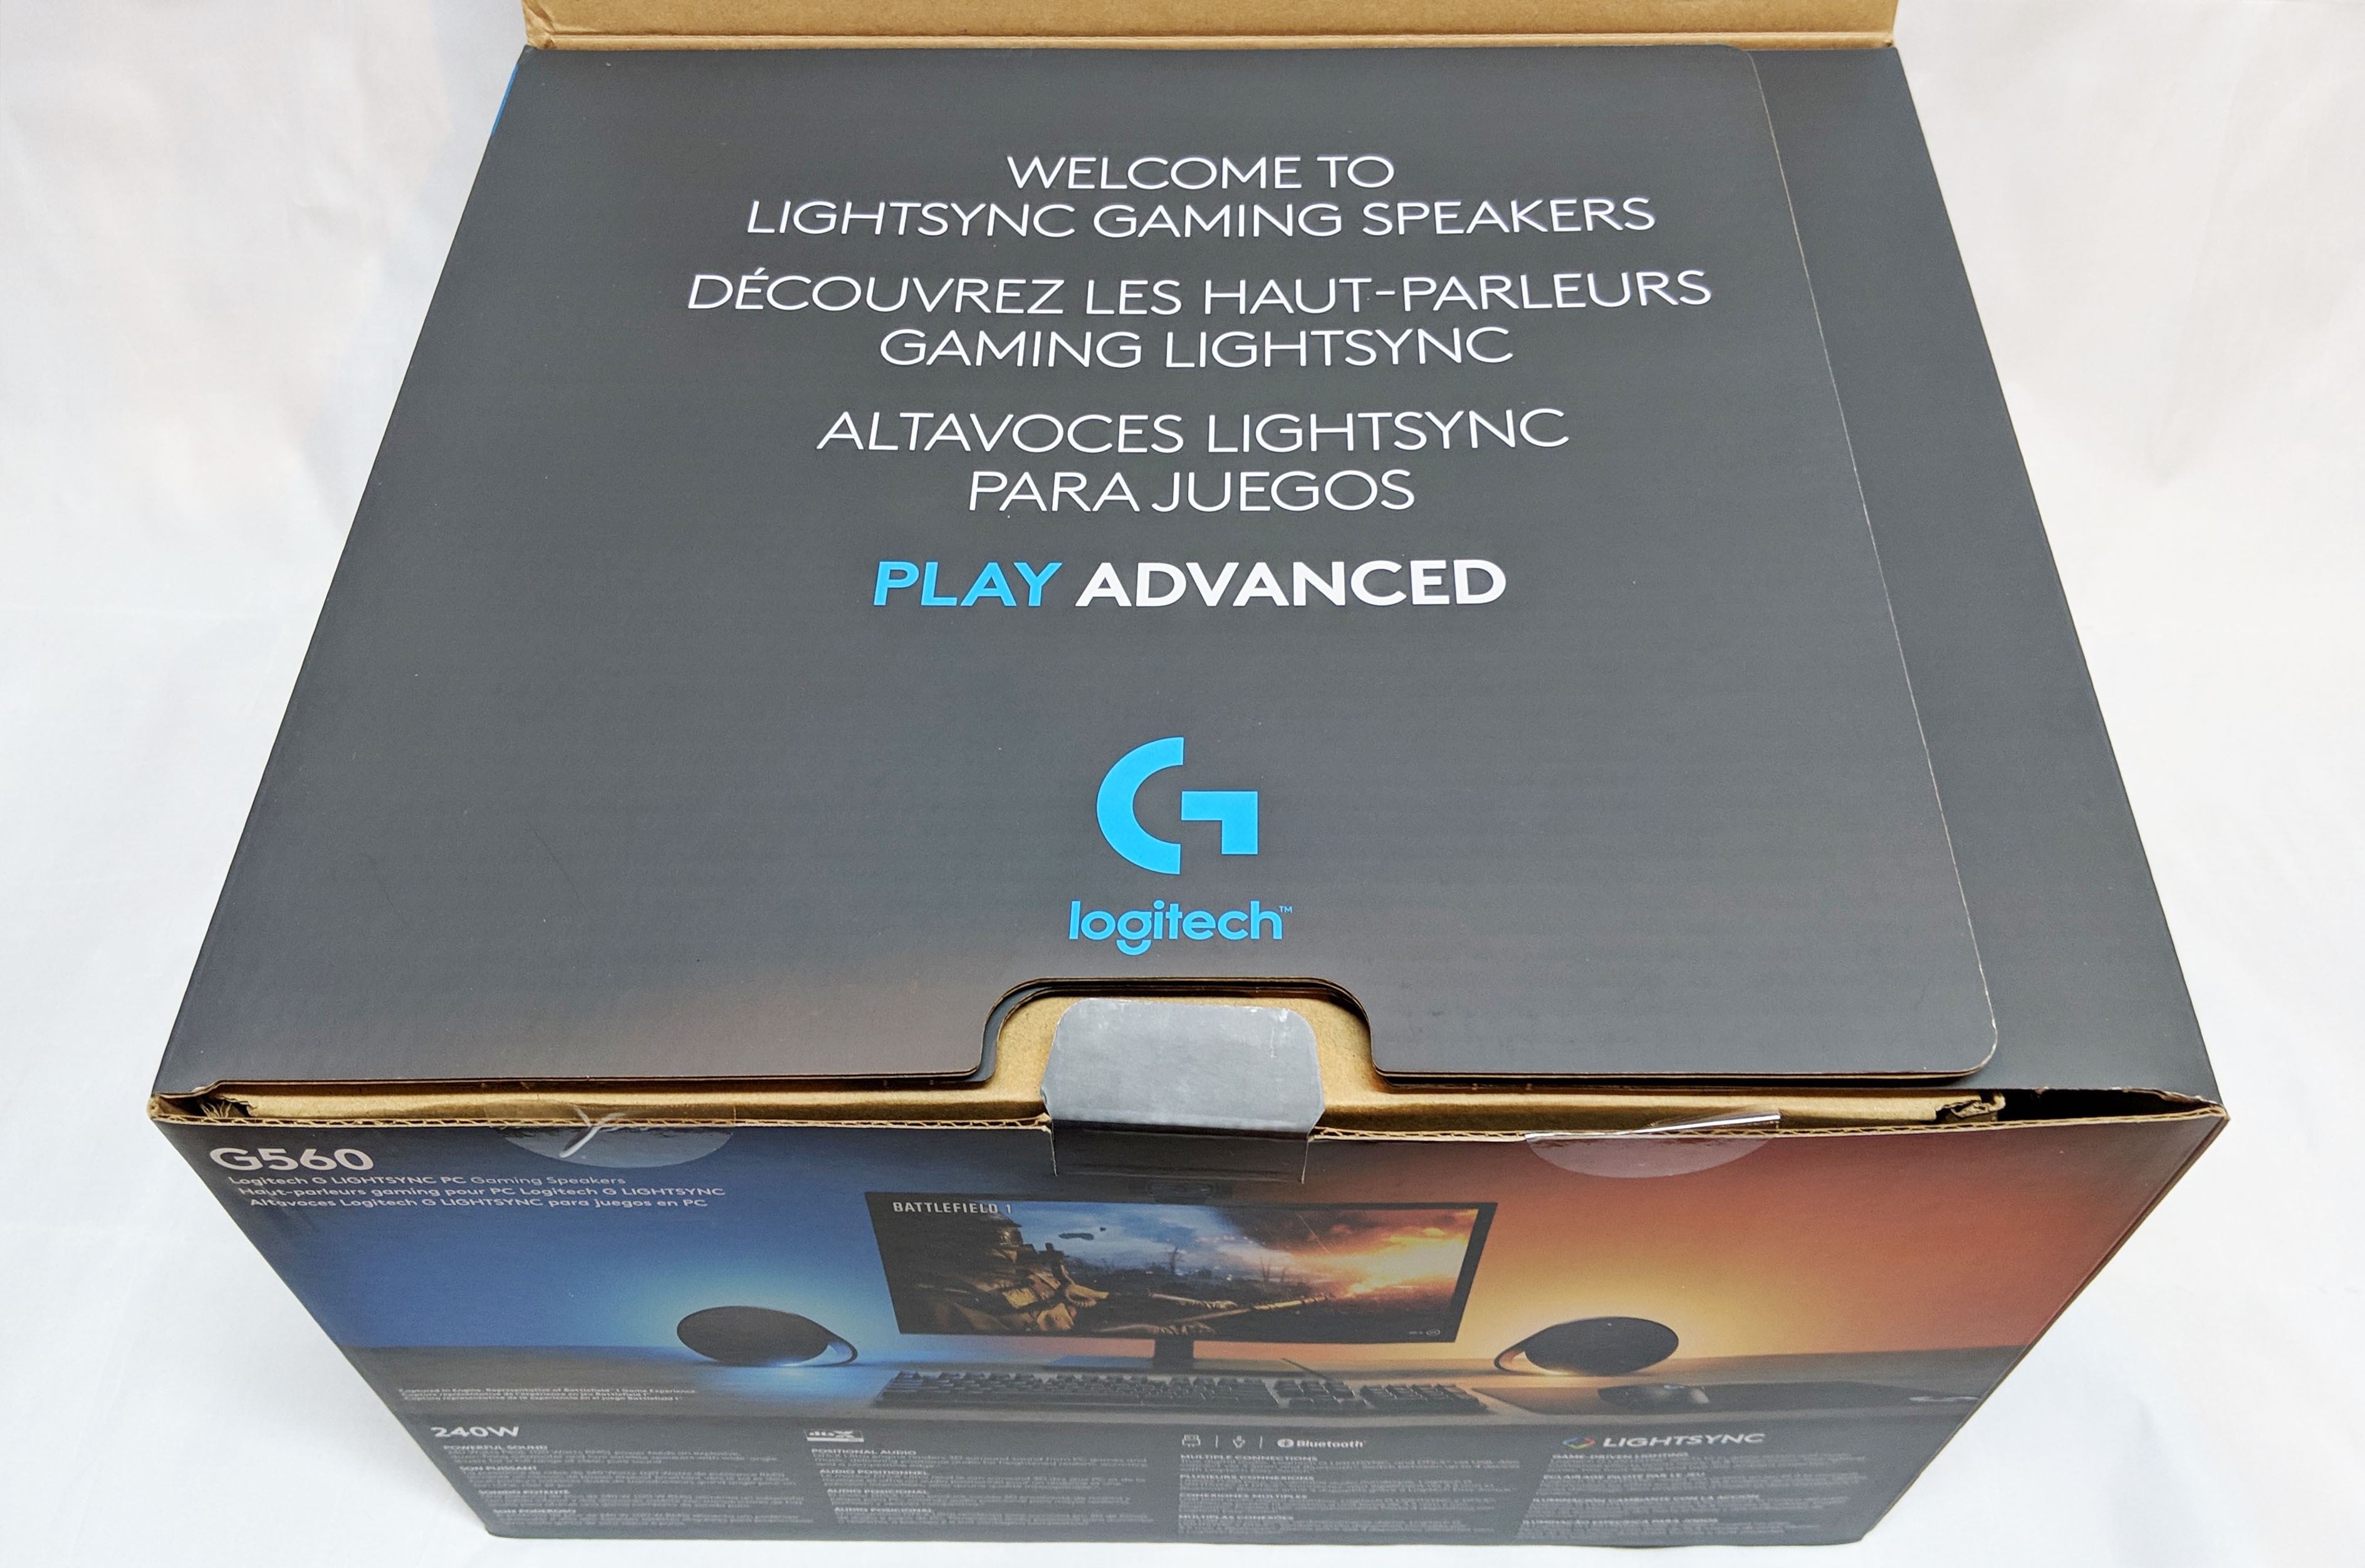 Logitech Haut-Parleur Gaming G560 pour PC Lightsync au meilleur